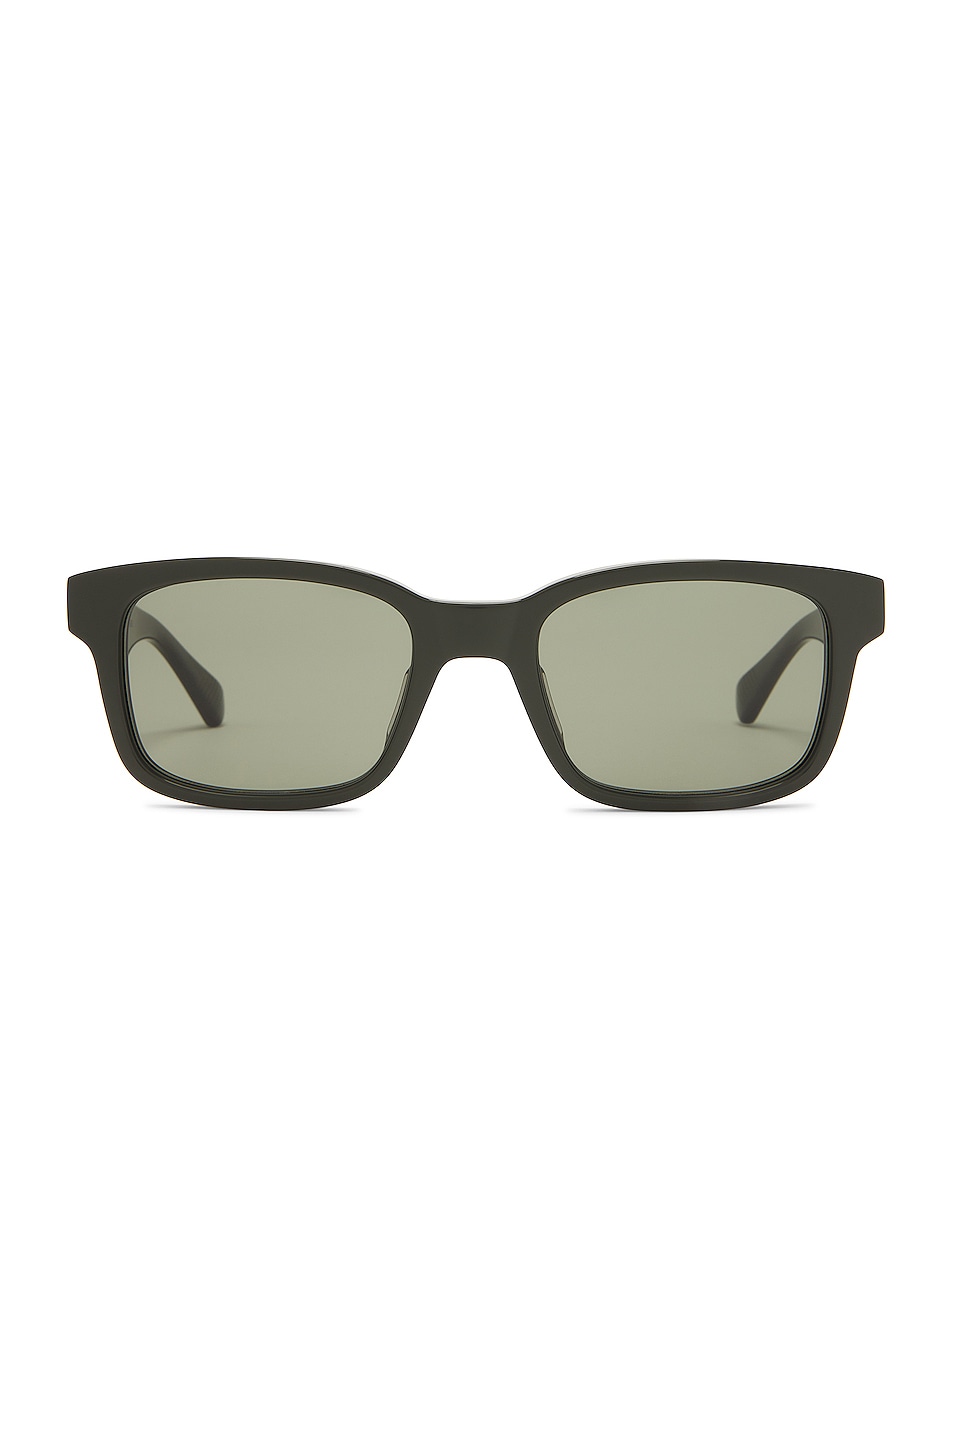 BV1146S Sunglasses in Olive